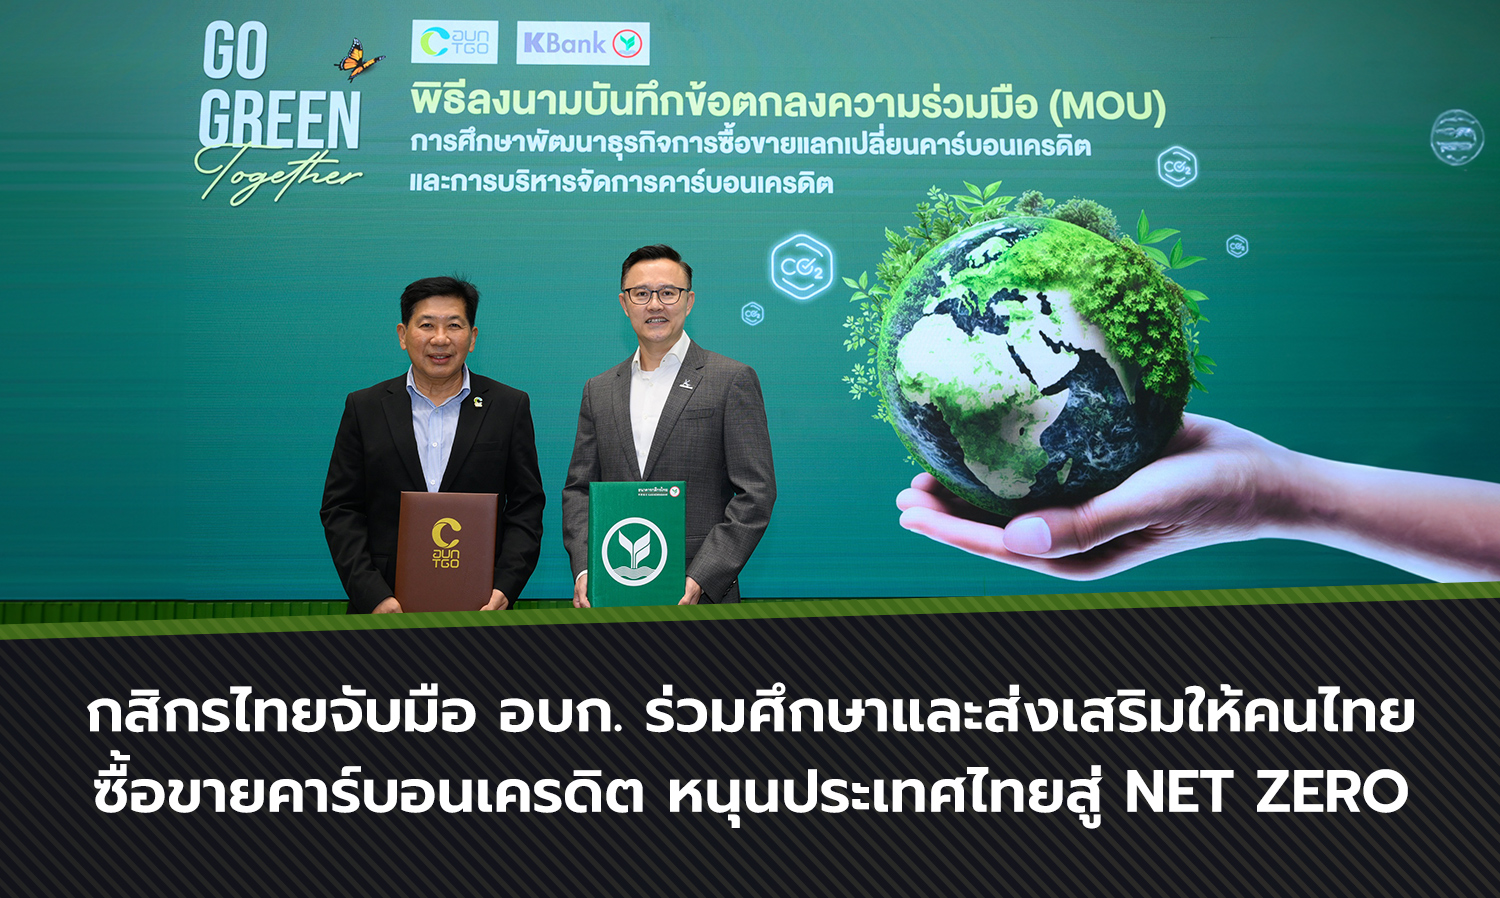 กสิกรไทยจับมือ อบก. ร่วมศึกษาและส่งเสริมให้คนไทยซื้อขายคาร์บอนเครดิต หนุนประเทศไทยสู่ Net Zero